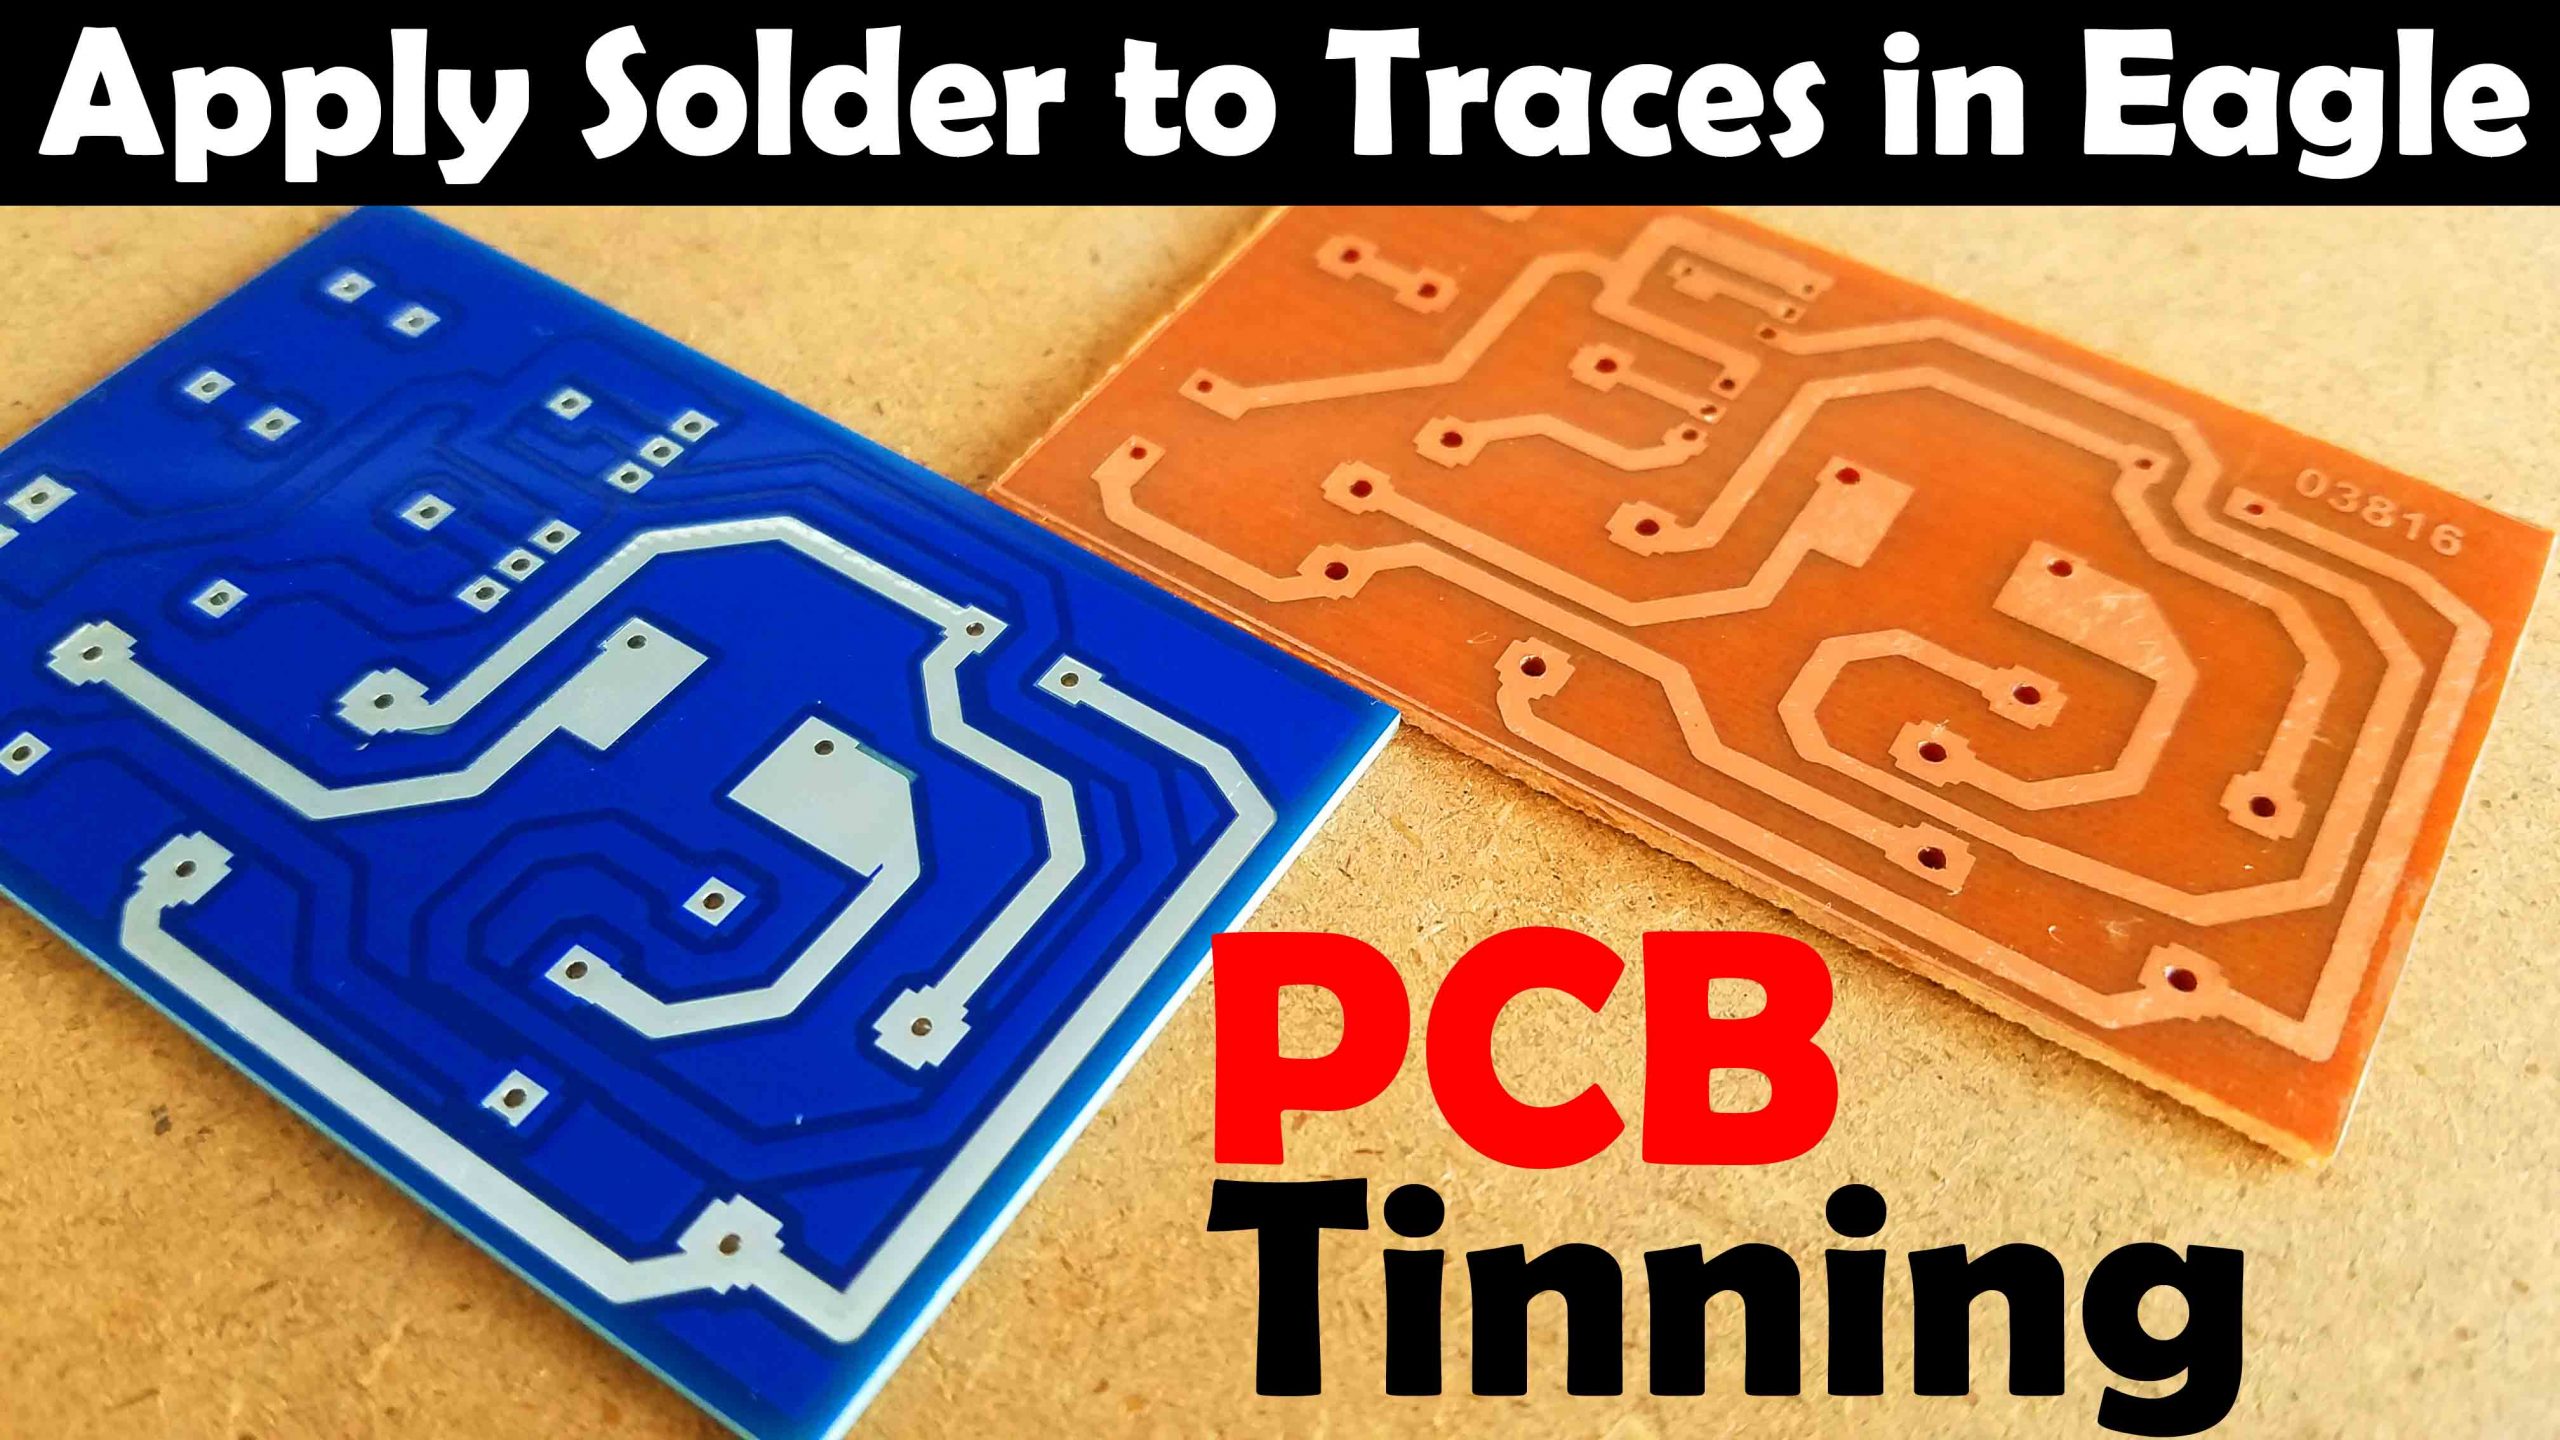 pcb tinning